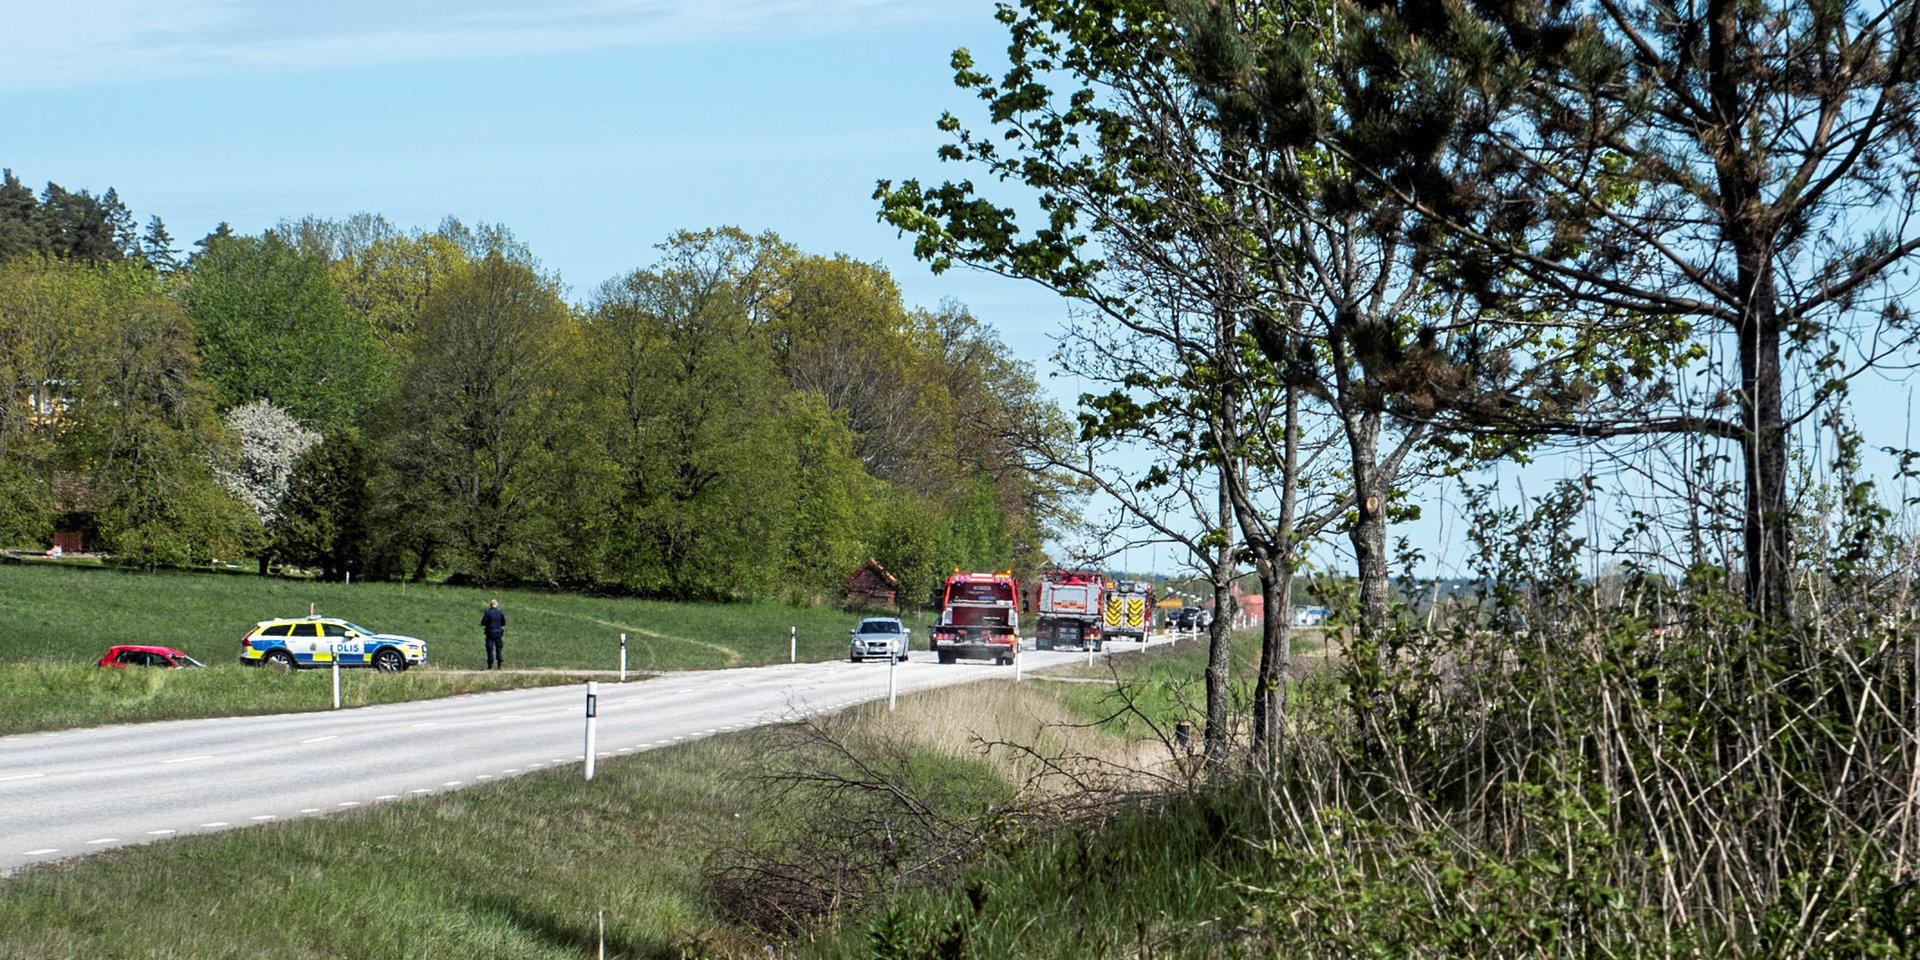 En singelolycka inträffade på väg 190, mellan Sollebrunn och Gräfsnäs, vid lunchtid under torsdagen. Den 55-åriga kvinna som körde bilen misstänks för grovt rattfylleri